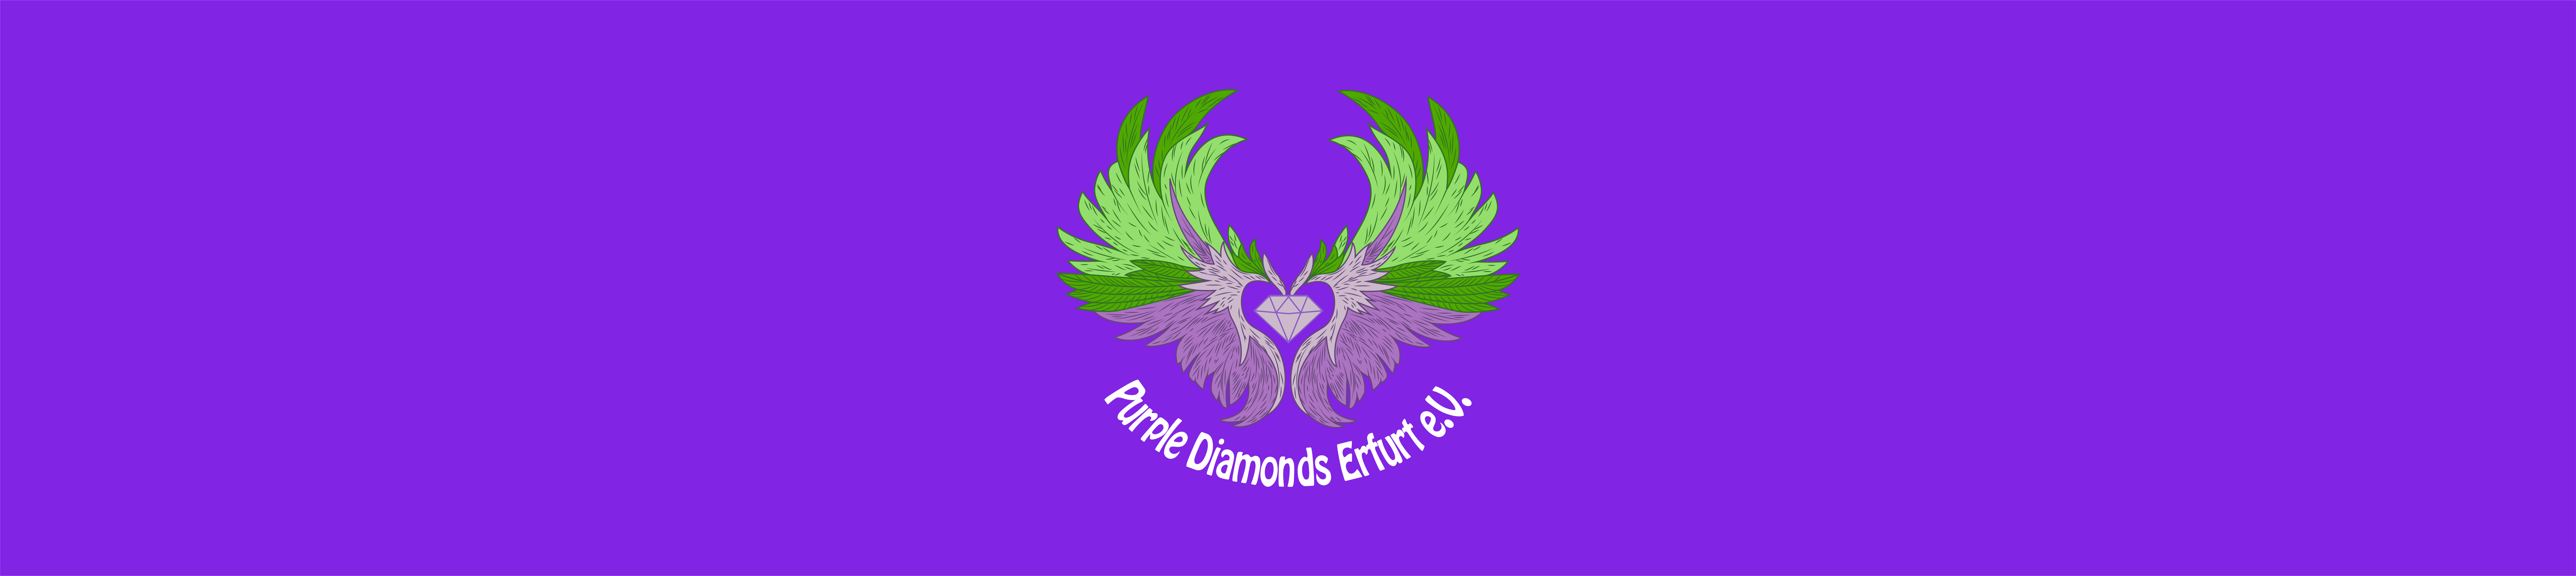 Purple Diamonds Erfurt Title Image